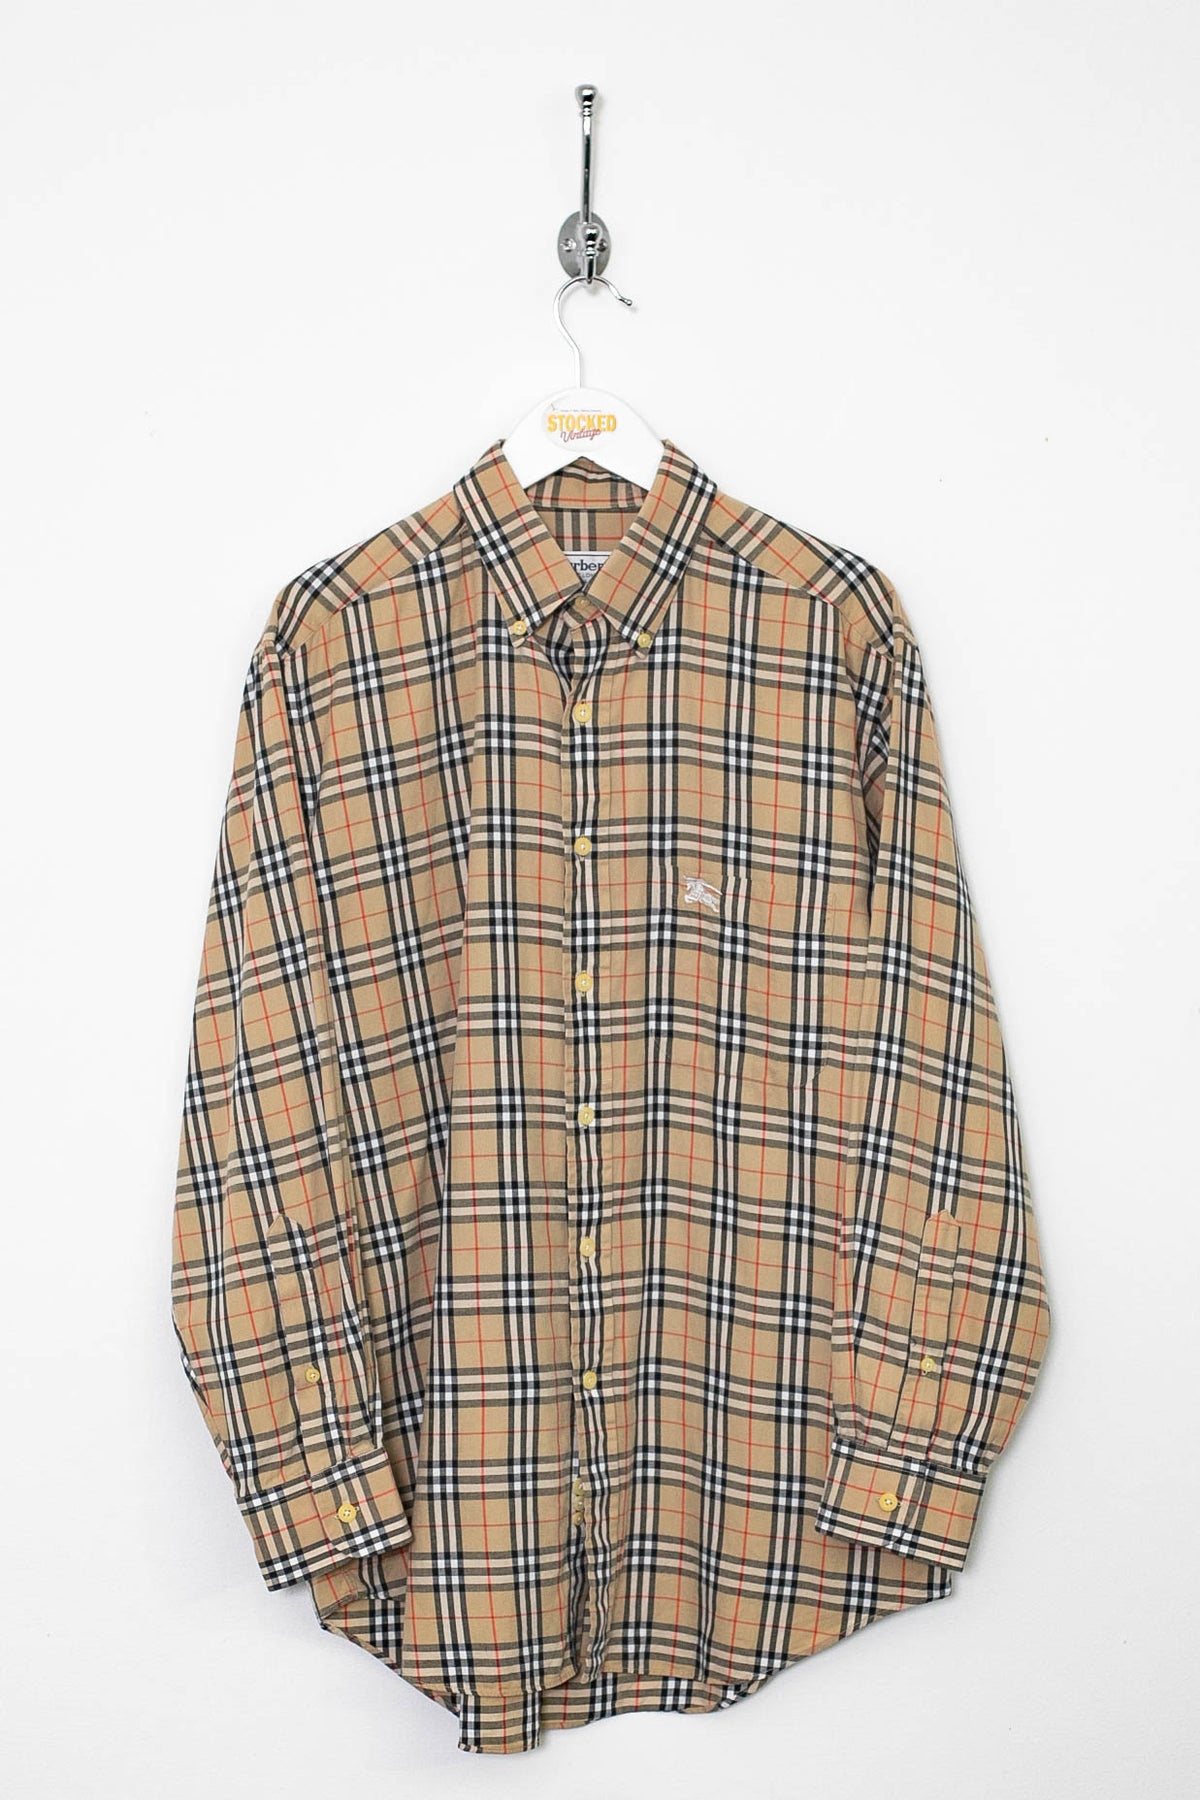 90s Burberry Nova Check Shirt (M)